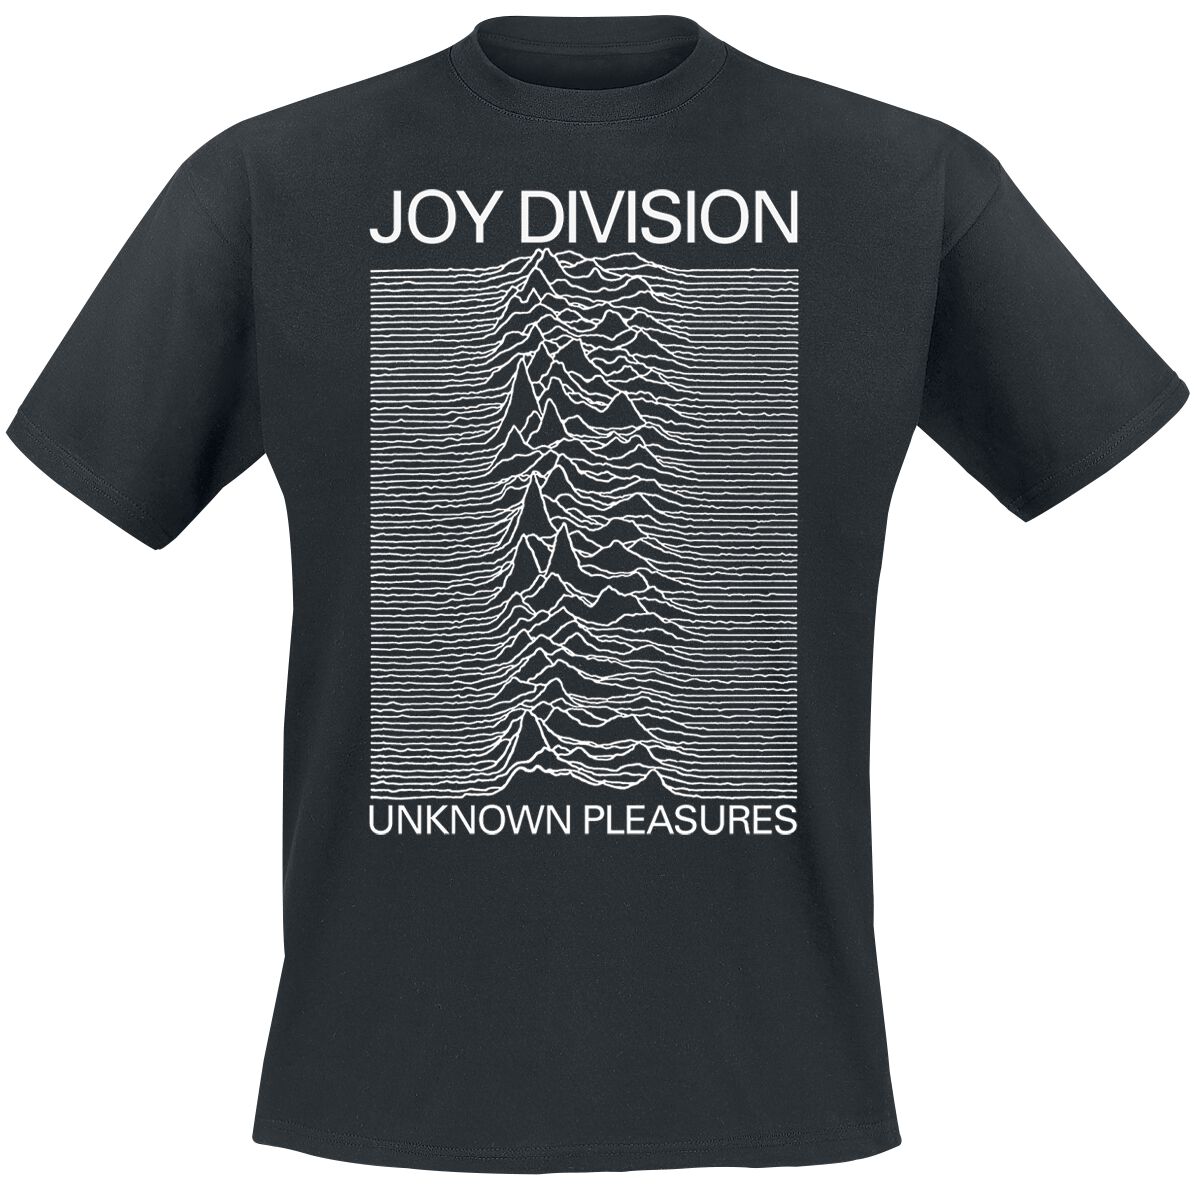 joy division t-shirt - unknown pleasures - s bis xxl - fÃ¼r mÃ¤nner - grÃ¶ÃŸe m - - lizenziertes merchandise! schwarz